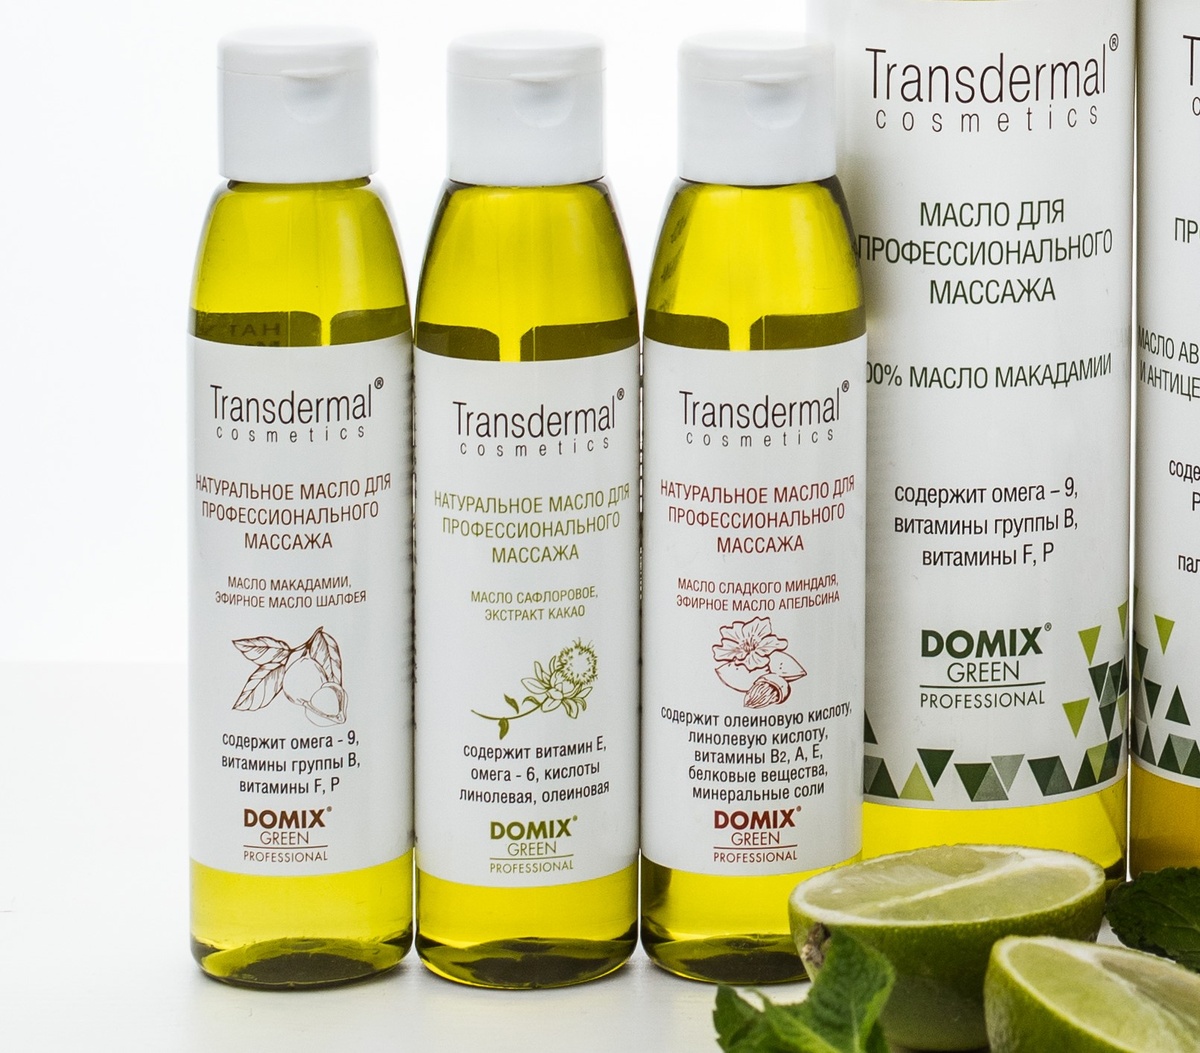 Натуральные масла Transdermal Professional Cosmetics